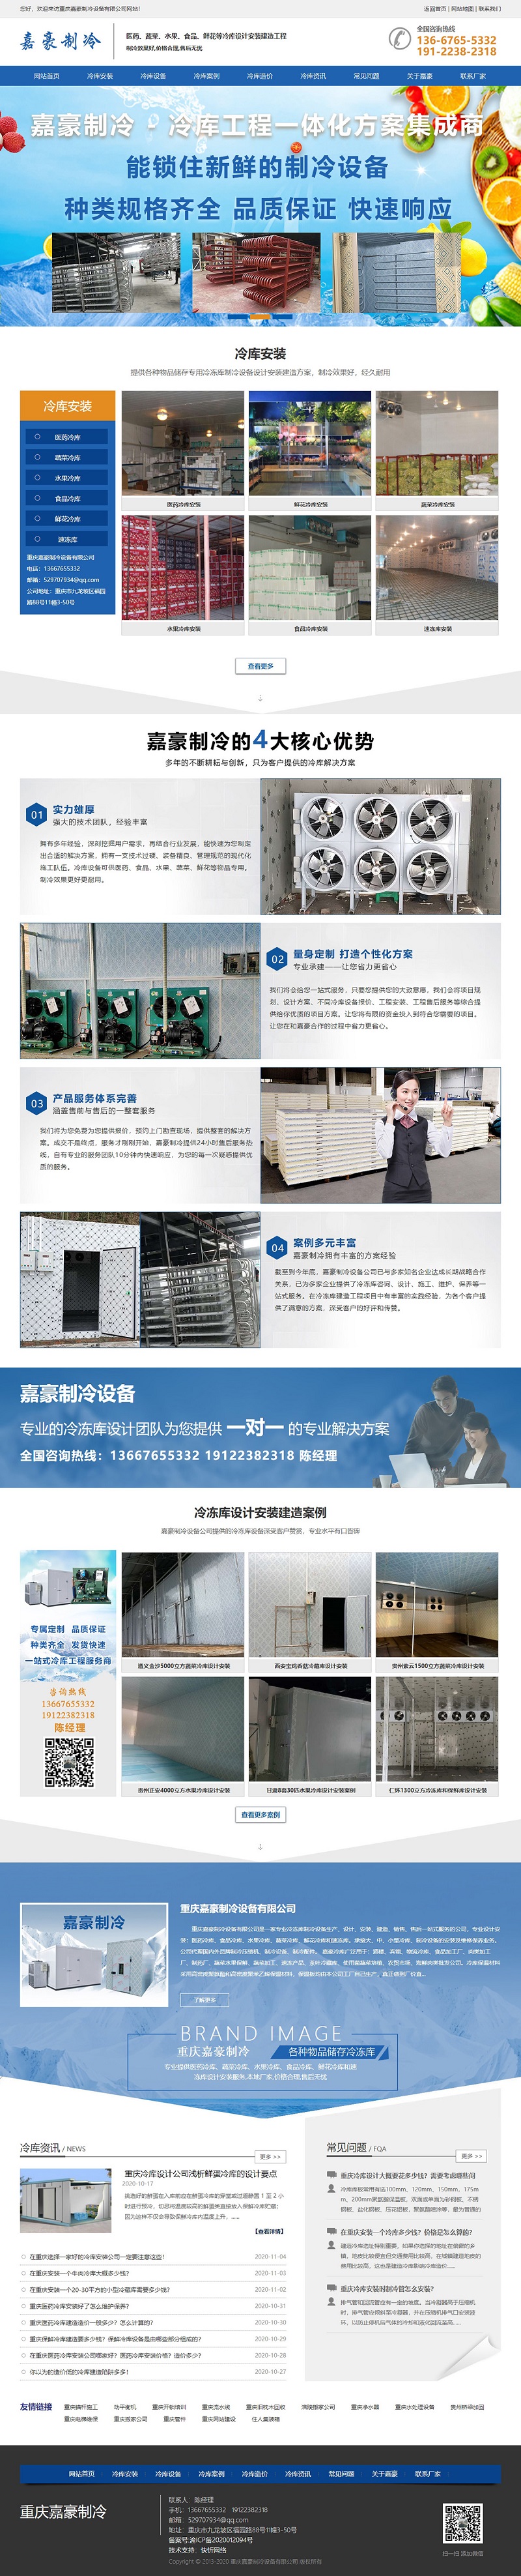 重庆嘉豪制冷设备有限公司网站建